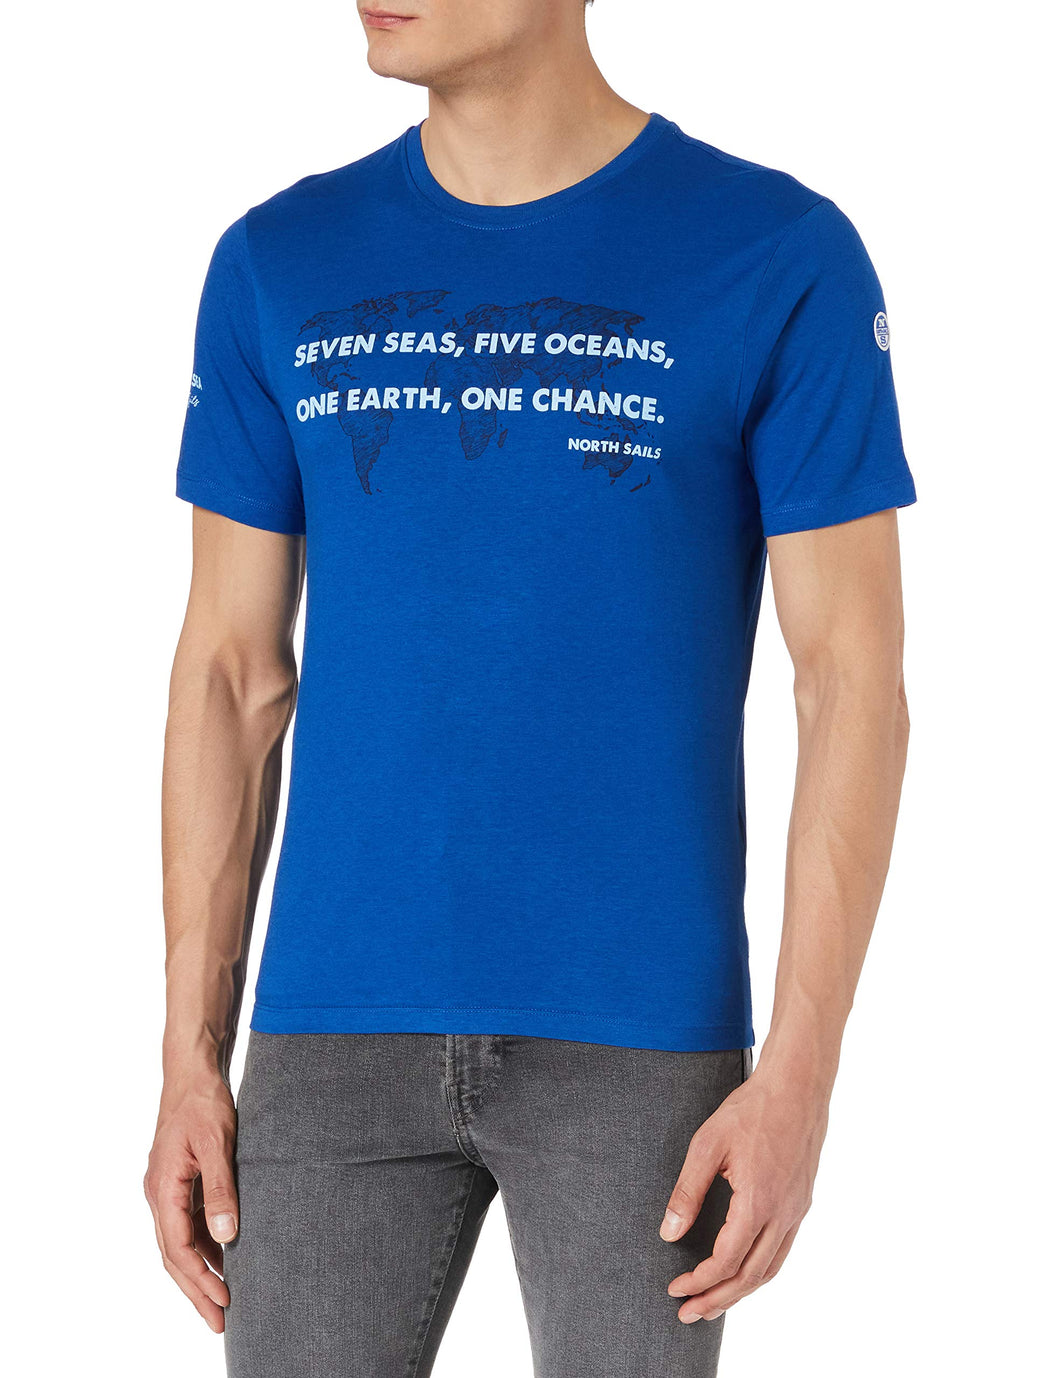 NORTH SAILS T-Shirt da Uomo in Jersey - Cotone e bambù - vestibilità Regolare - Leggera con Girocollo e Maniche Corte